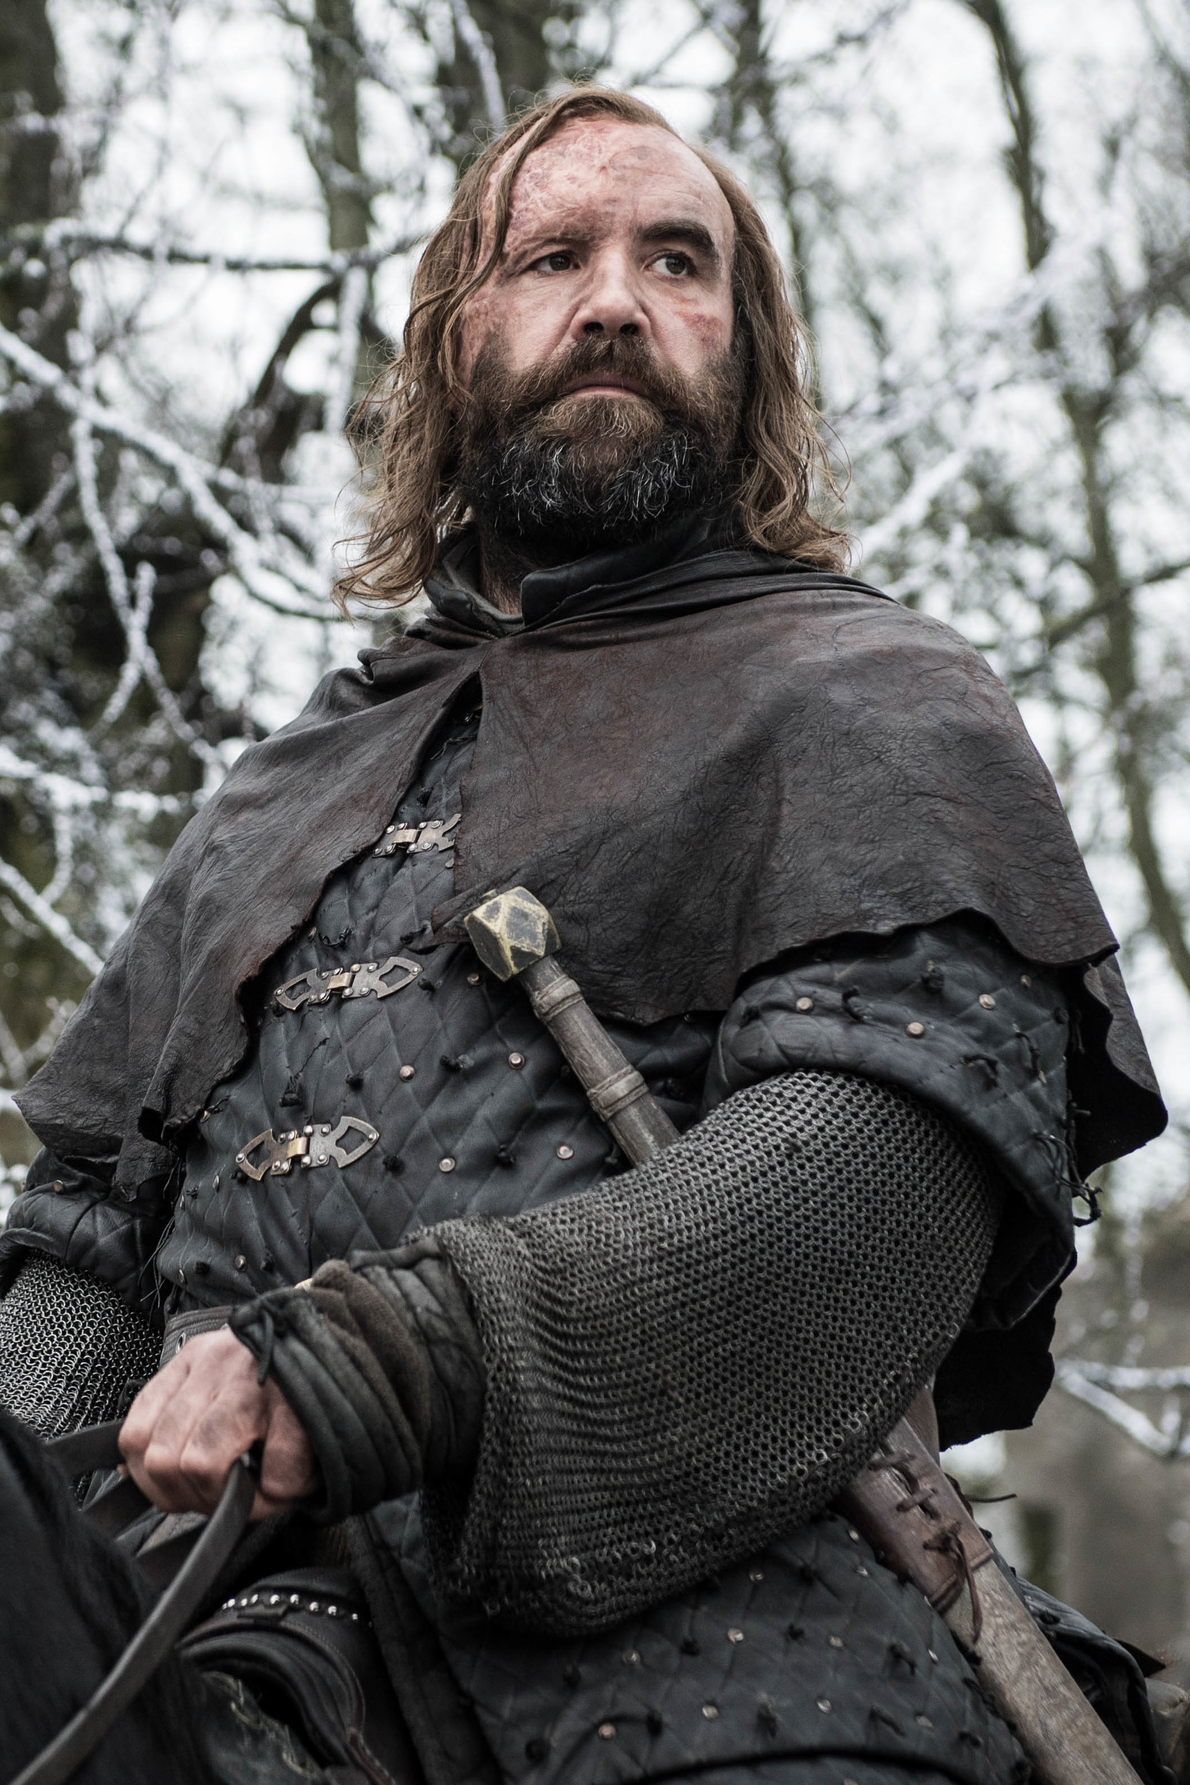 Comment est surnommé Sandor Clegane dans la série Game of Thrones ?